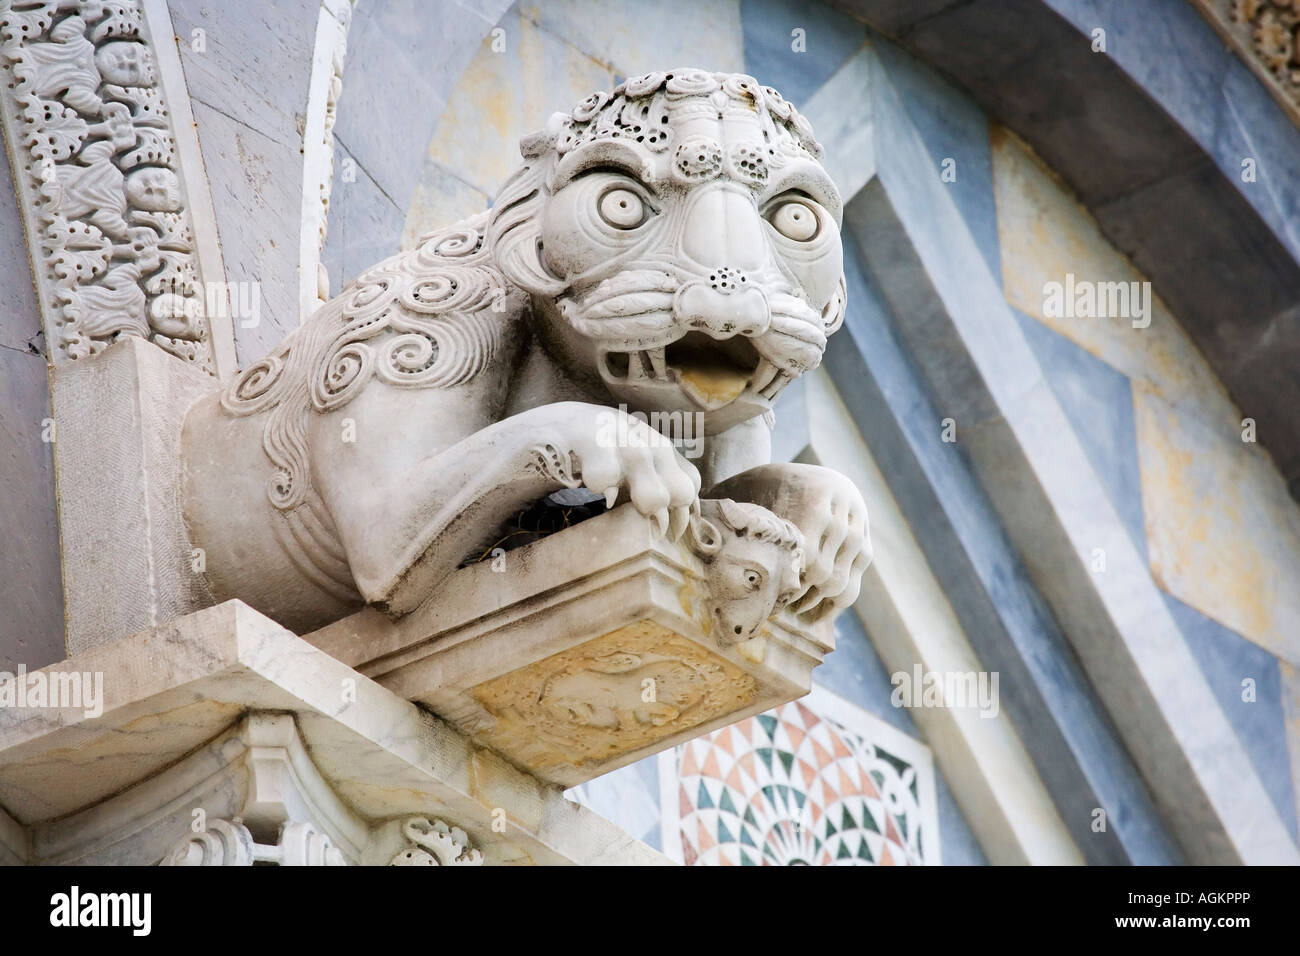 Europa, Italien, Pisa. Ein Wasserspeier über der Haustür des historischen Duomo Pisa oder der Kathedrale von Pisa. Stockfoto